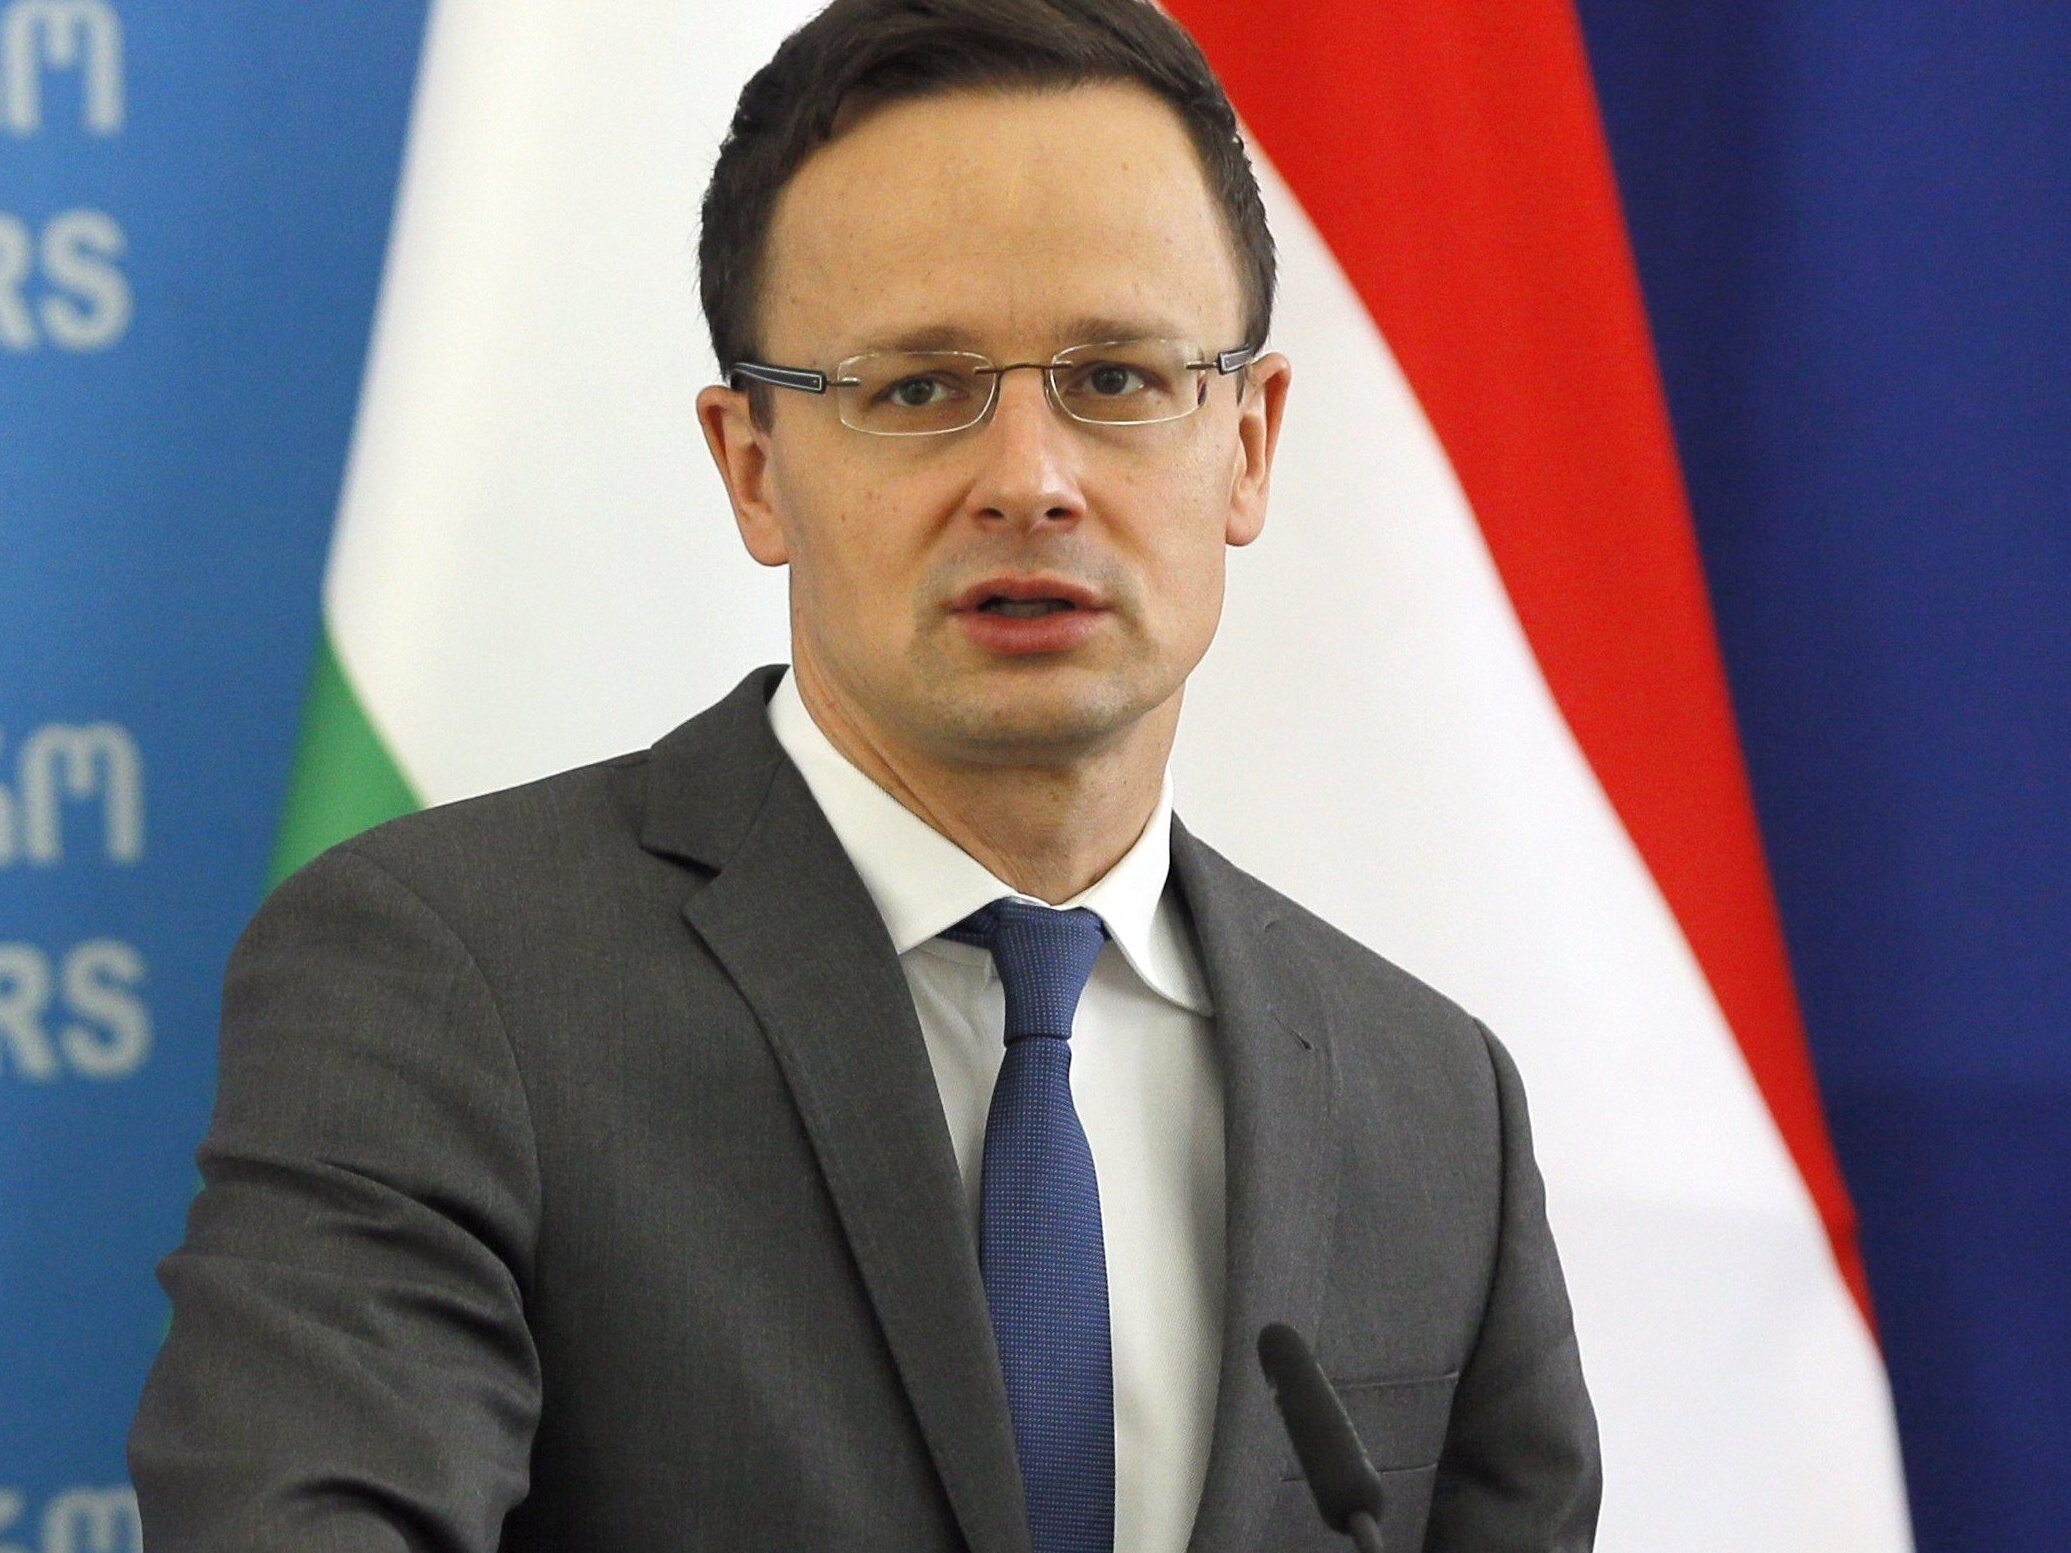 L’Ungheria non parteciperà alla folle missione